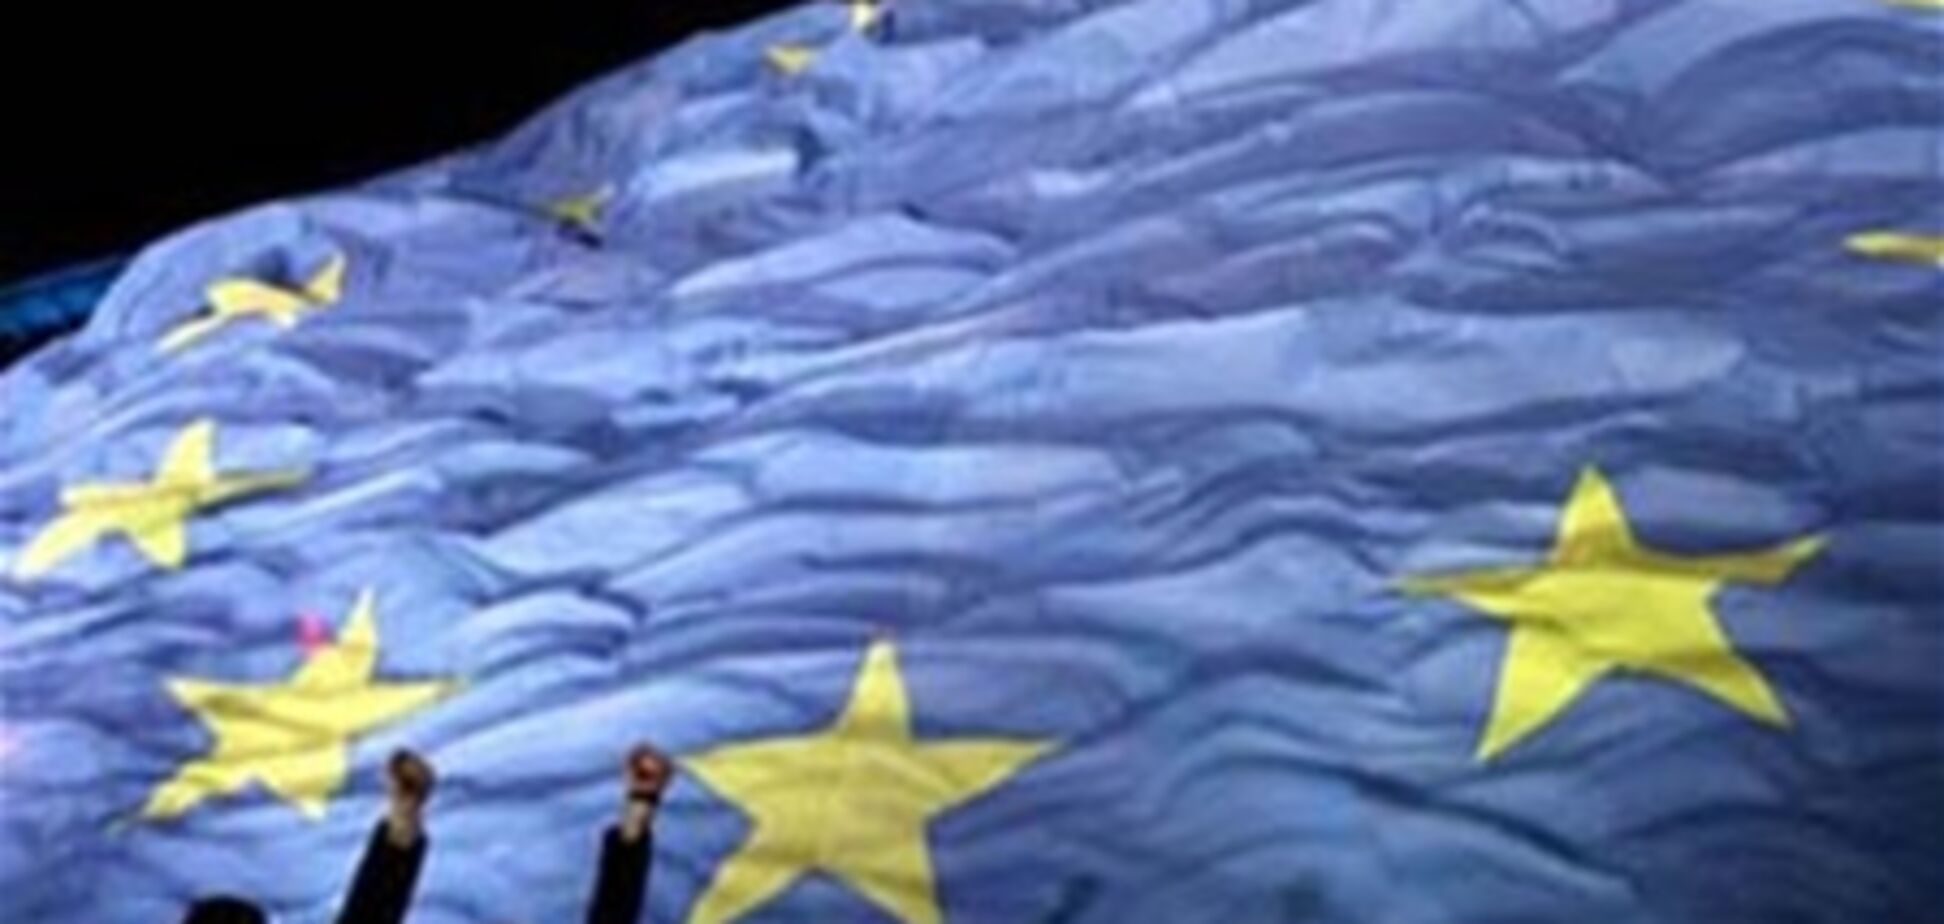 Украина и ЕС парафировали Соглашение об ассоциации